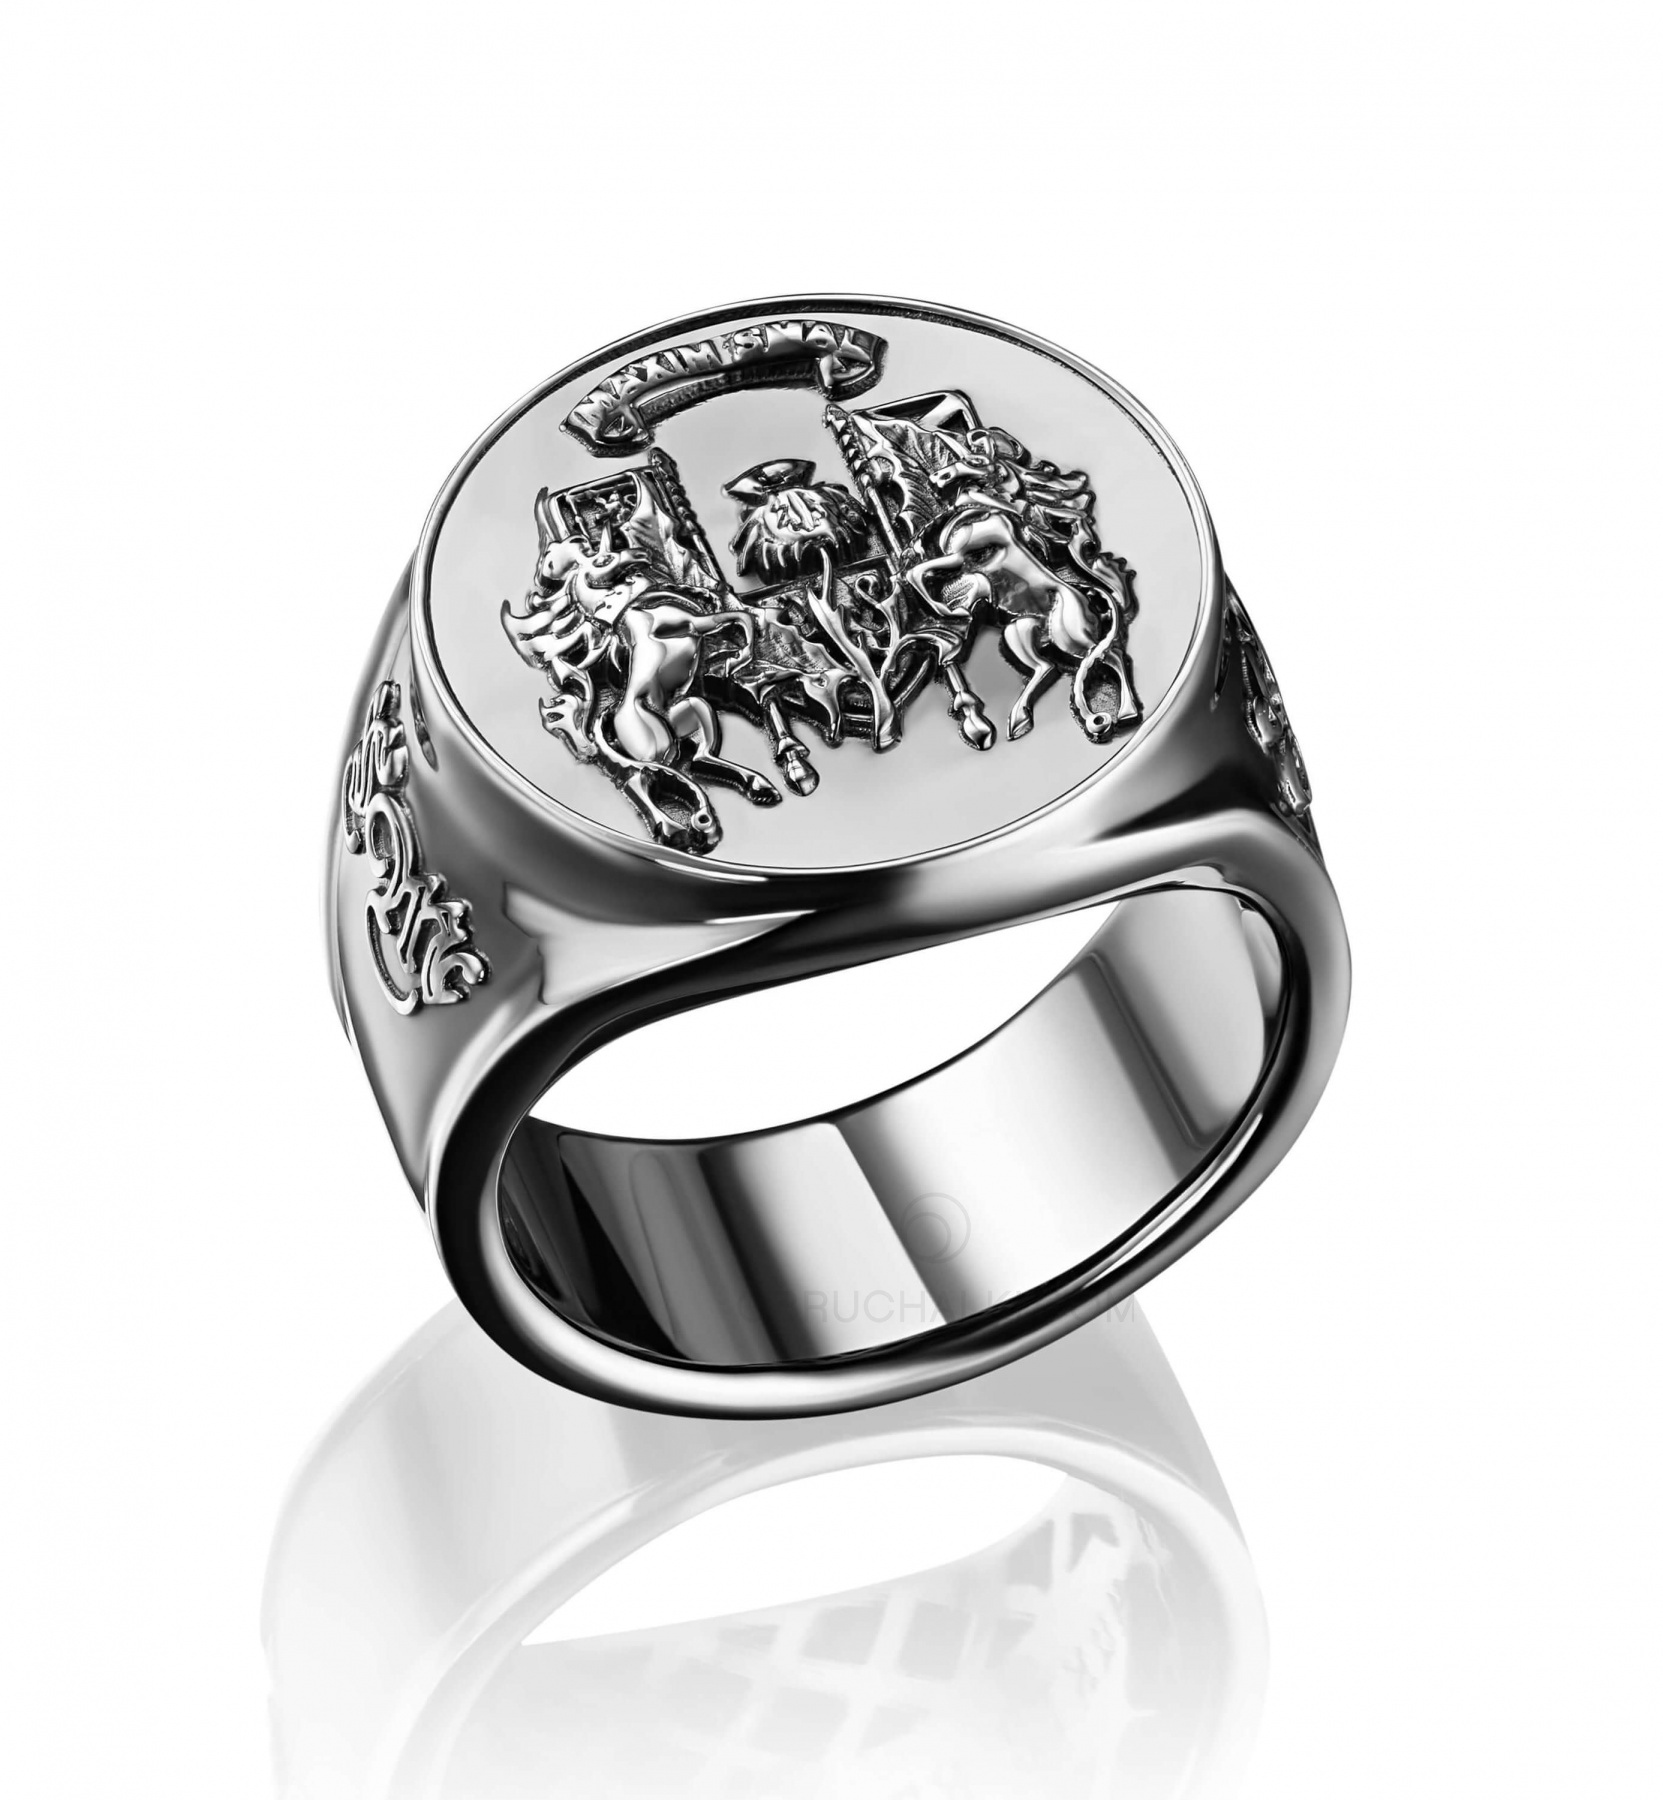 Кольцо-печатка мужская с фамильным гербом BLAZON на заказ из белого ижелтого золота, серебра, платины или своего металла